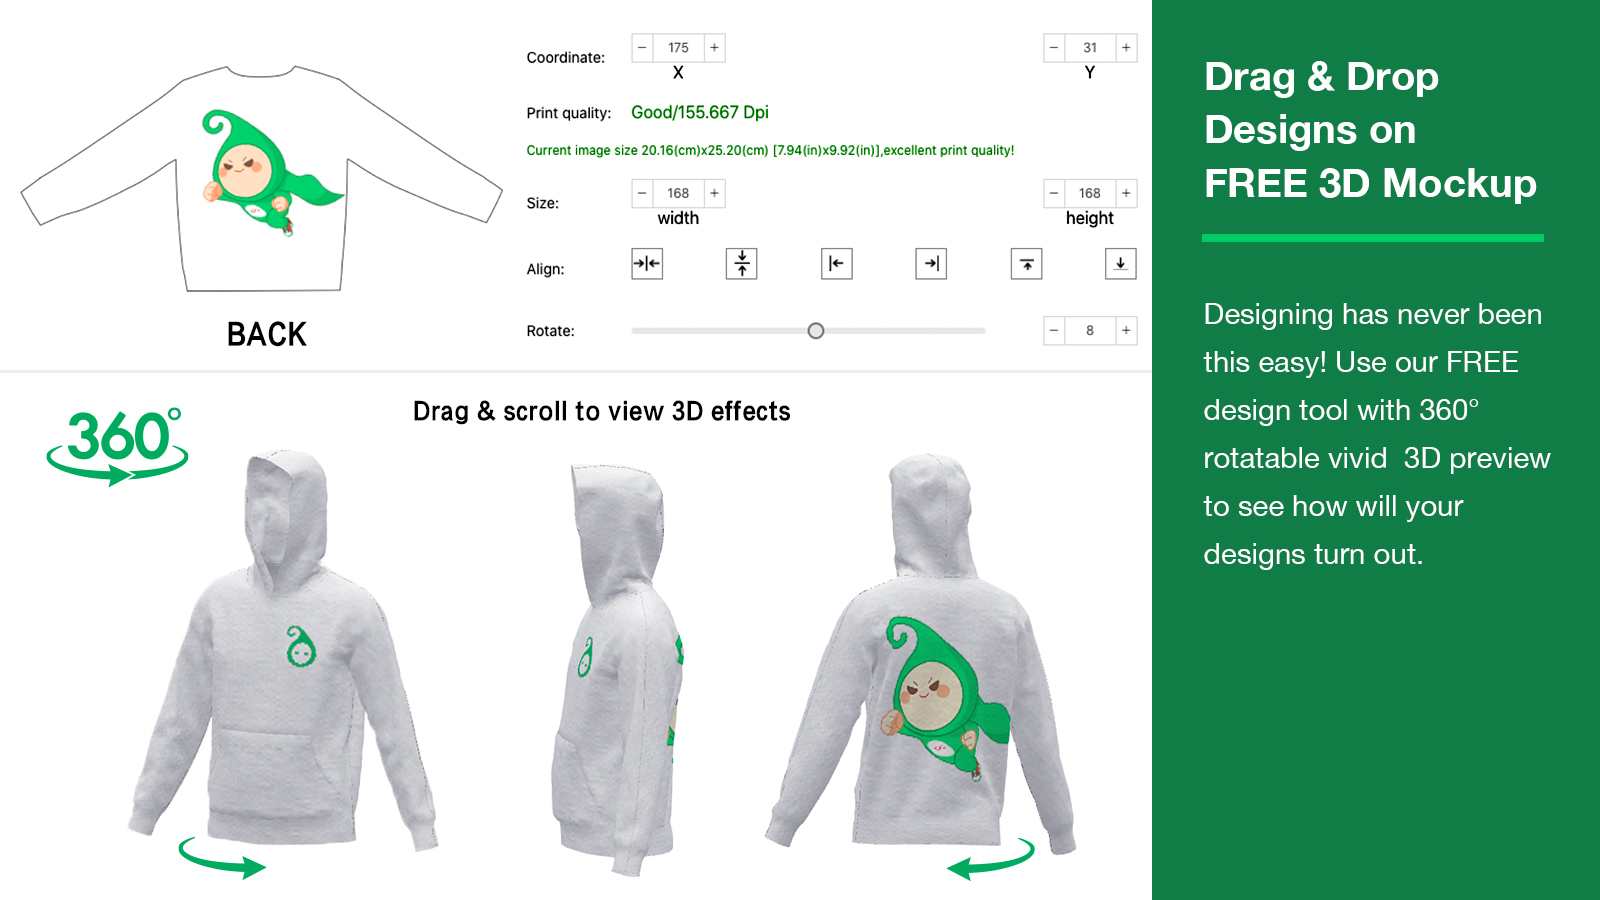 HugePOD Drag Drop Designs on FREE 3D Mockup